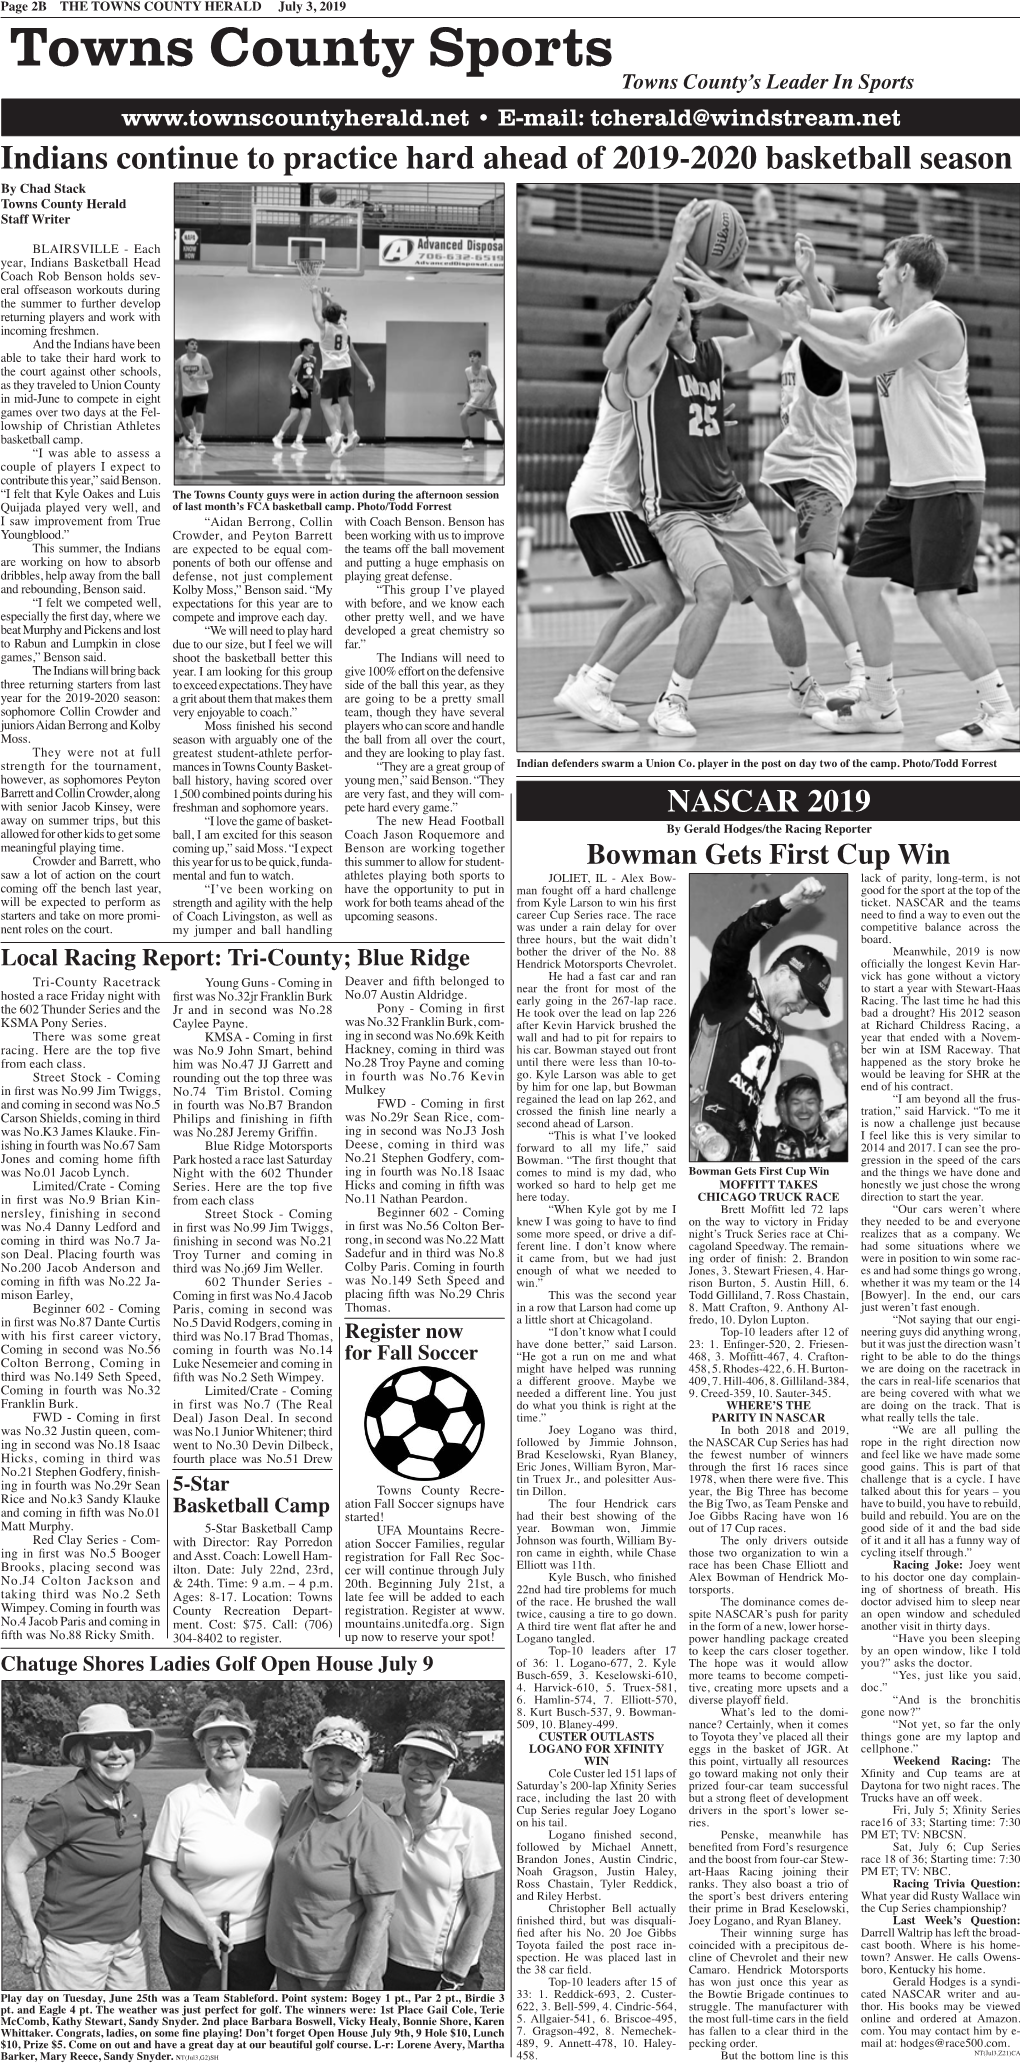 Sports Page 2B